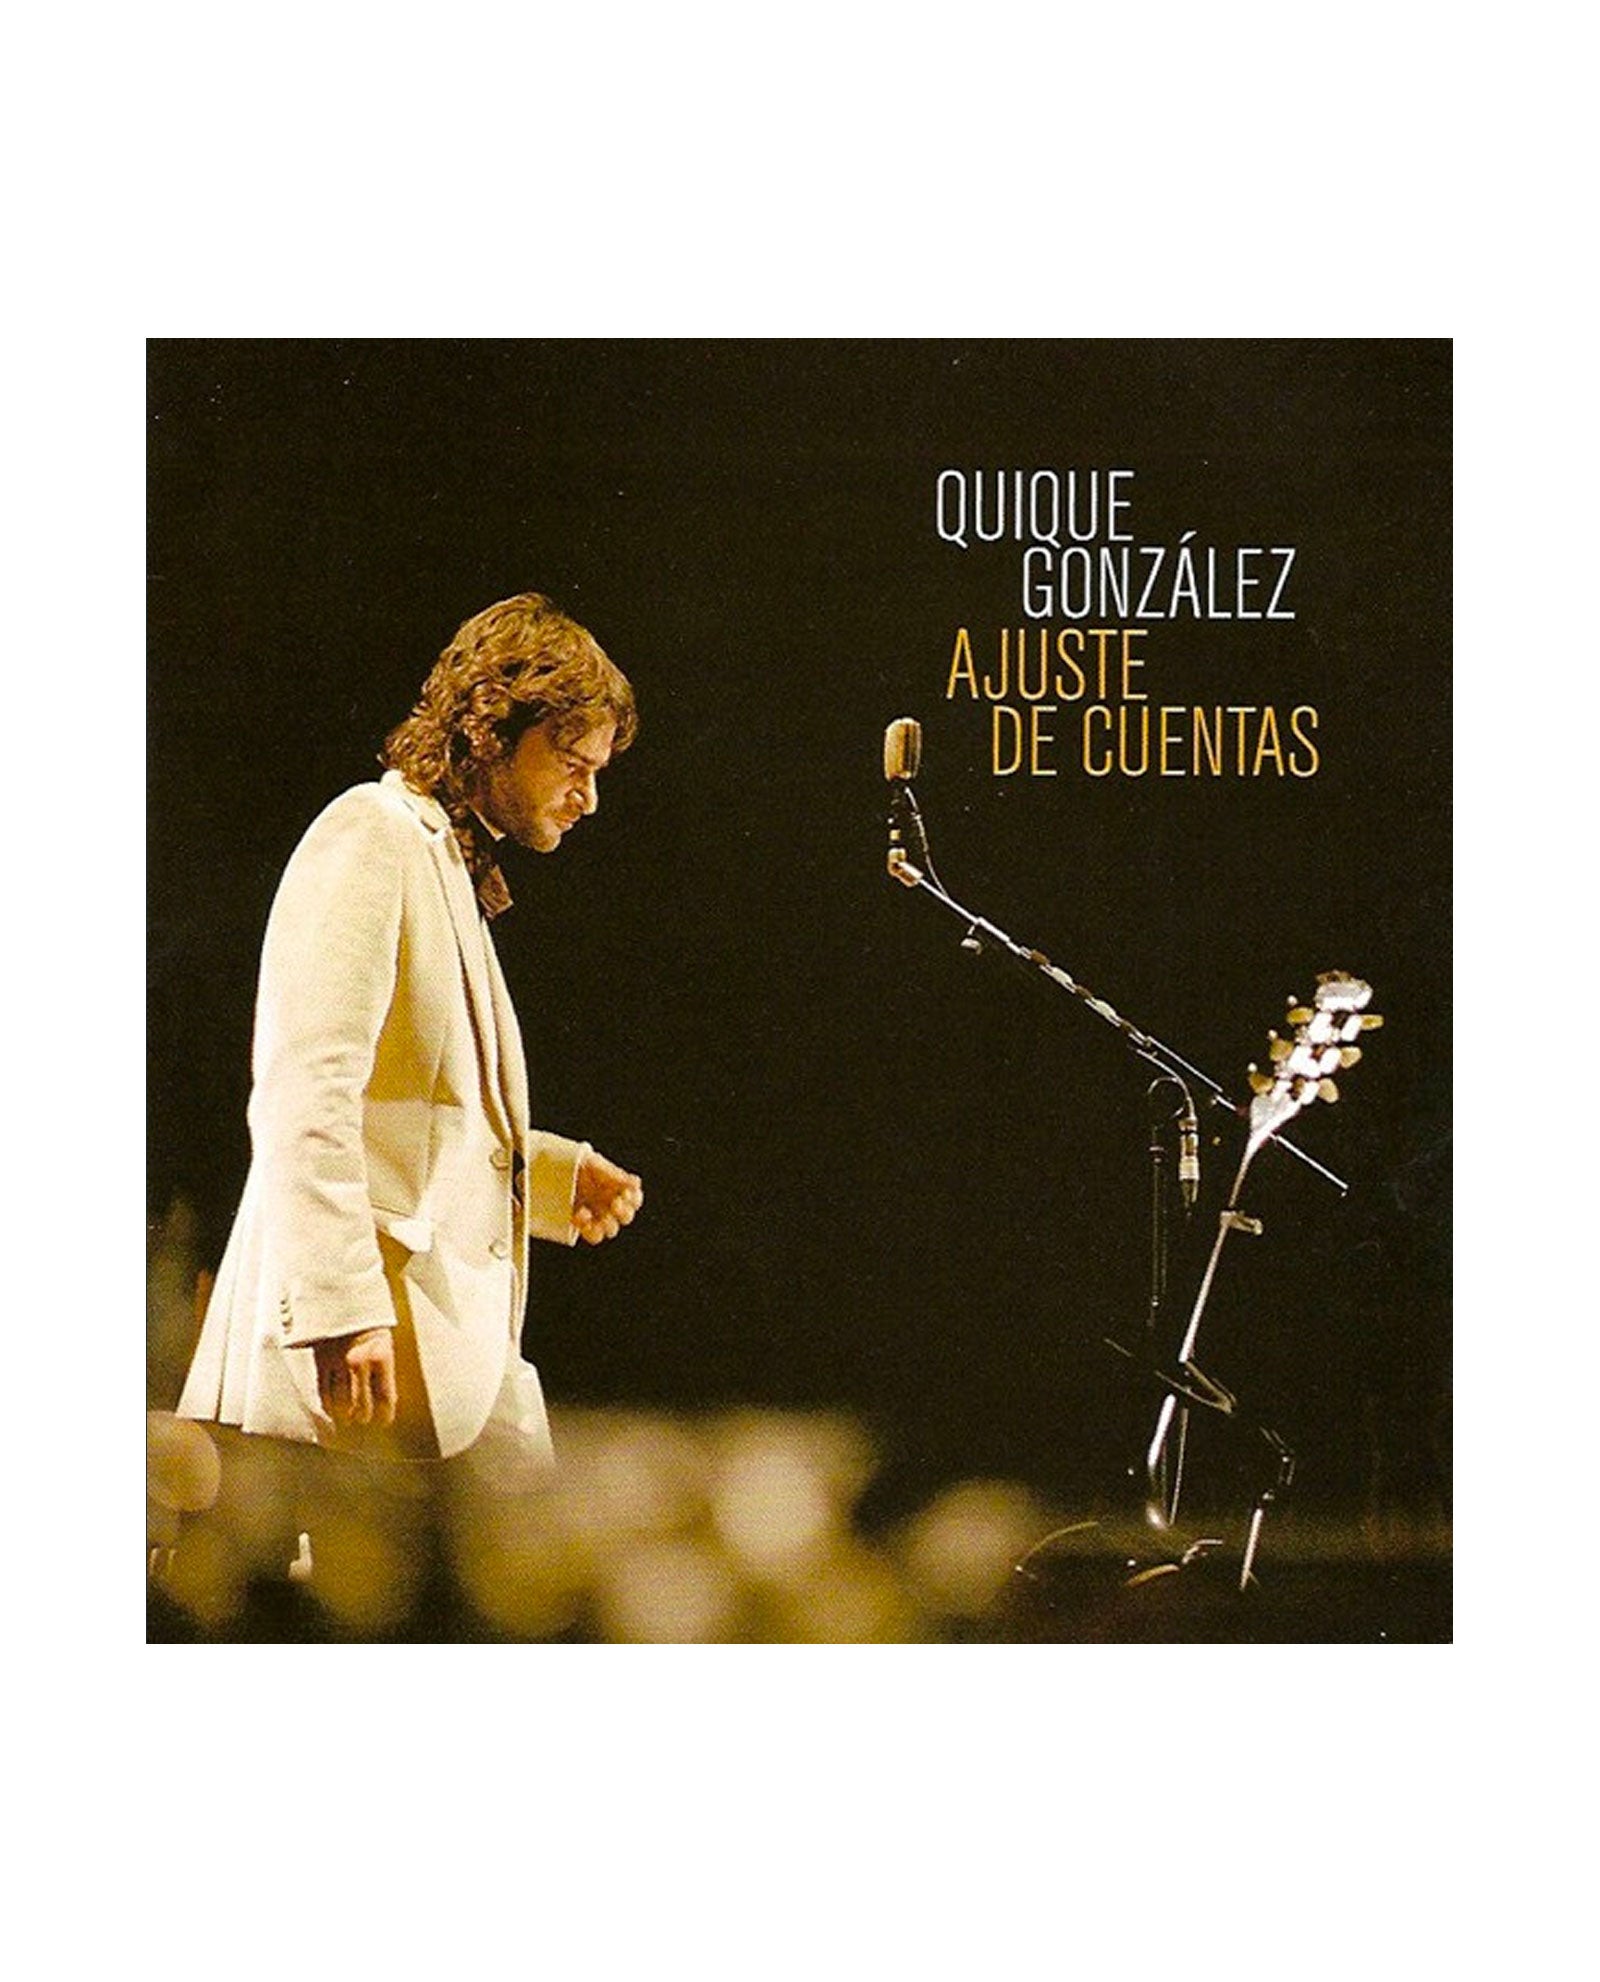 Quique González - 2LP Vinilo + CD "Auste de cuentas" - D2fy · Rocktud - Quique González